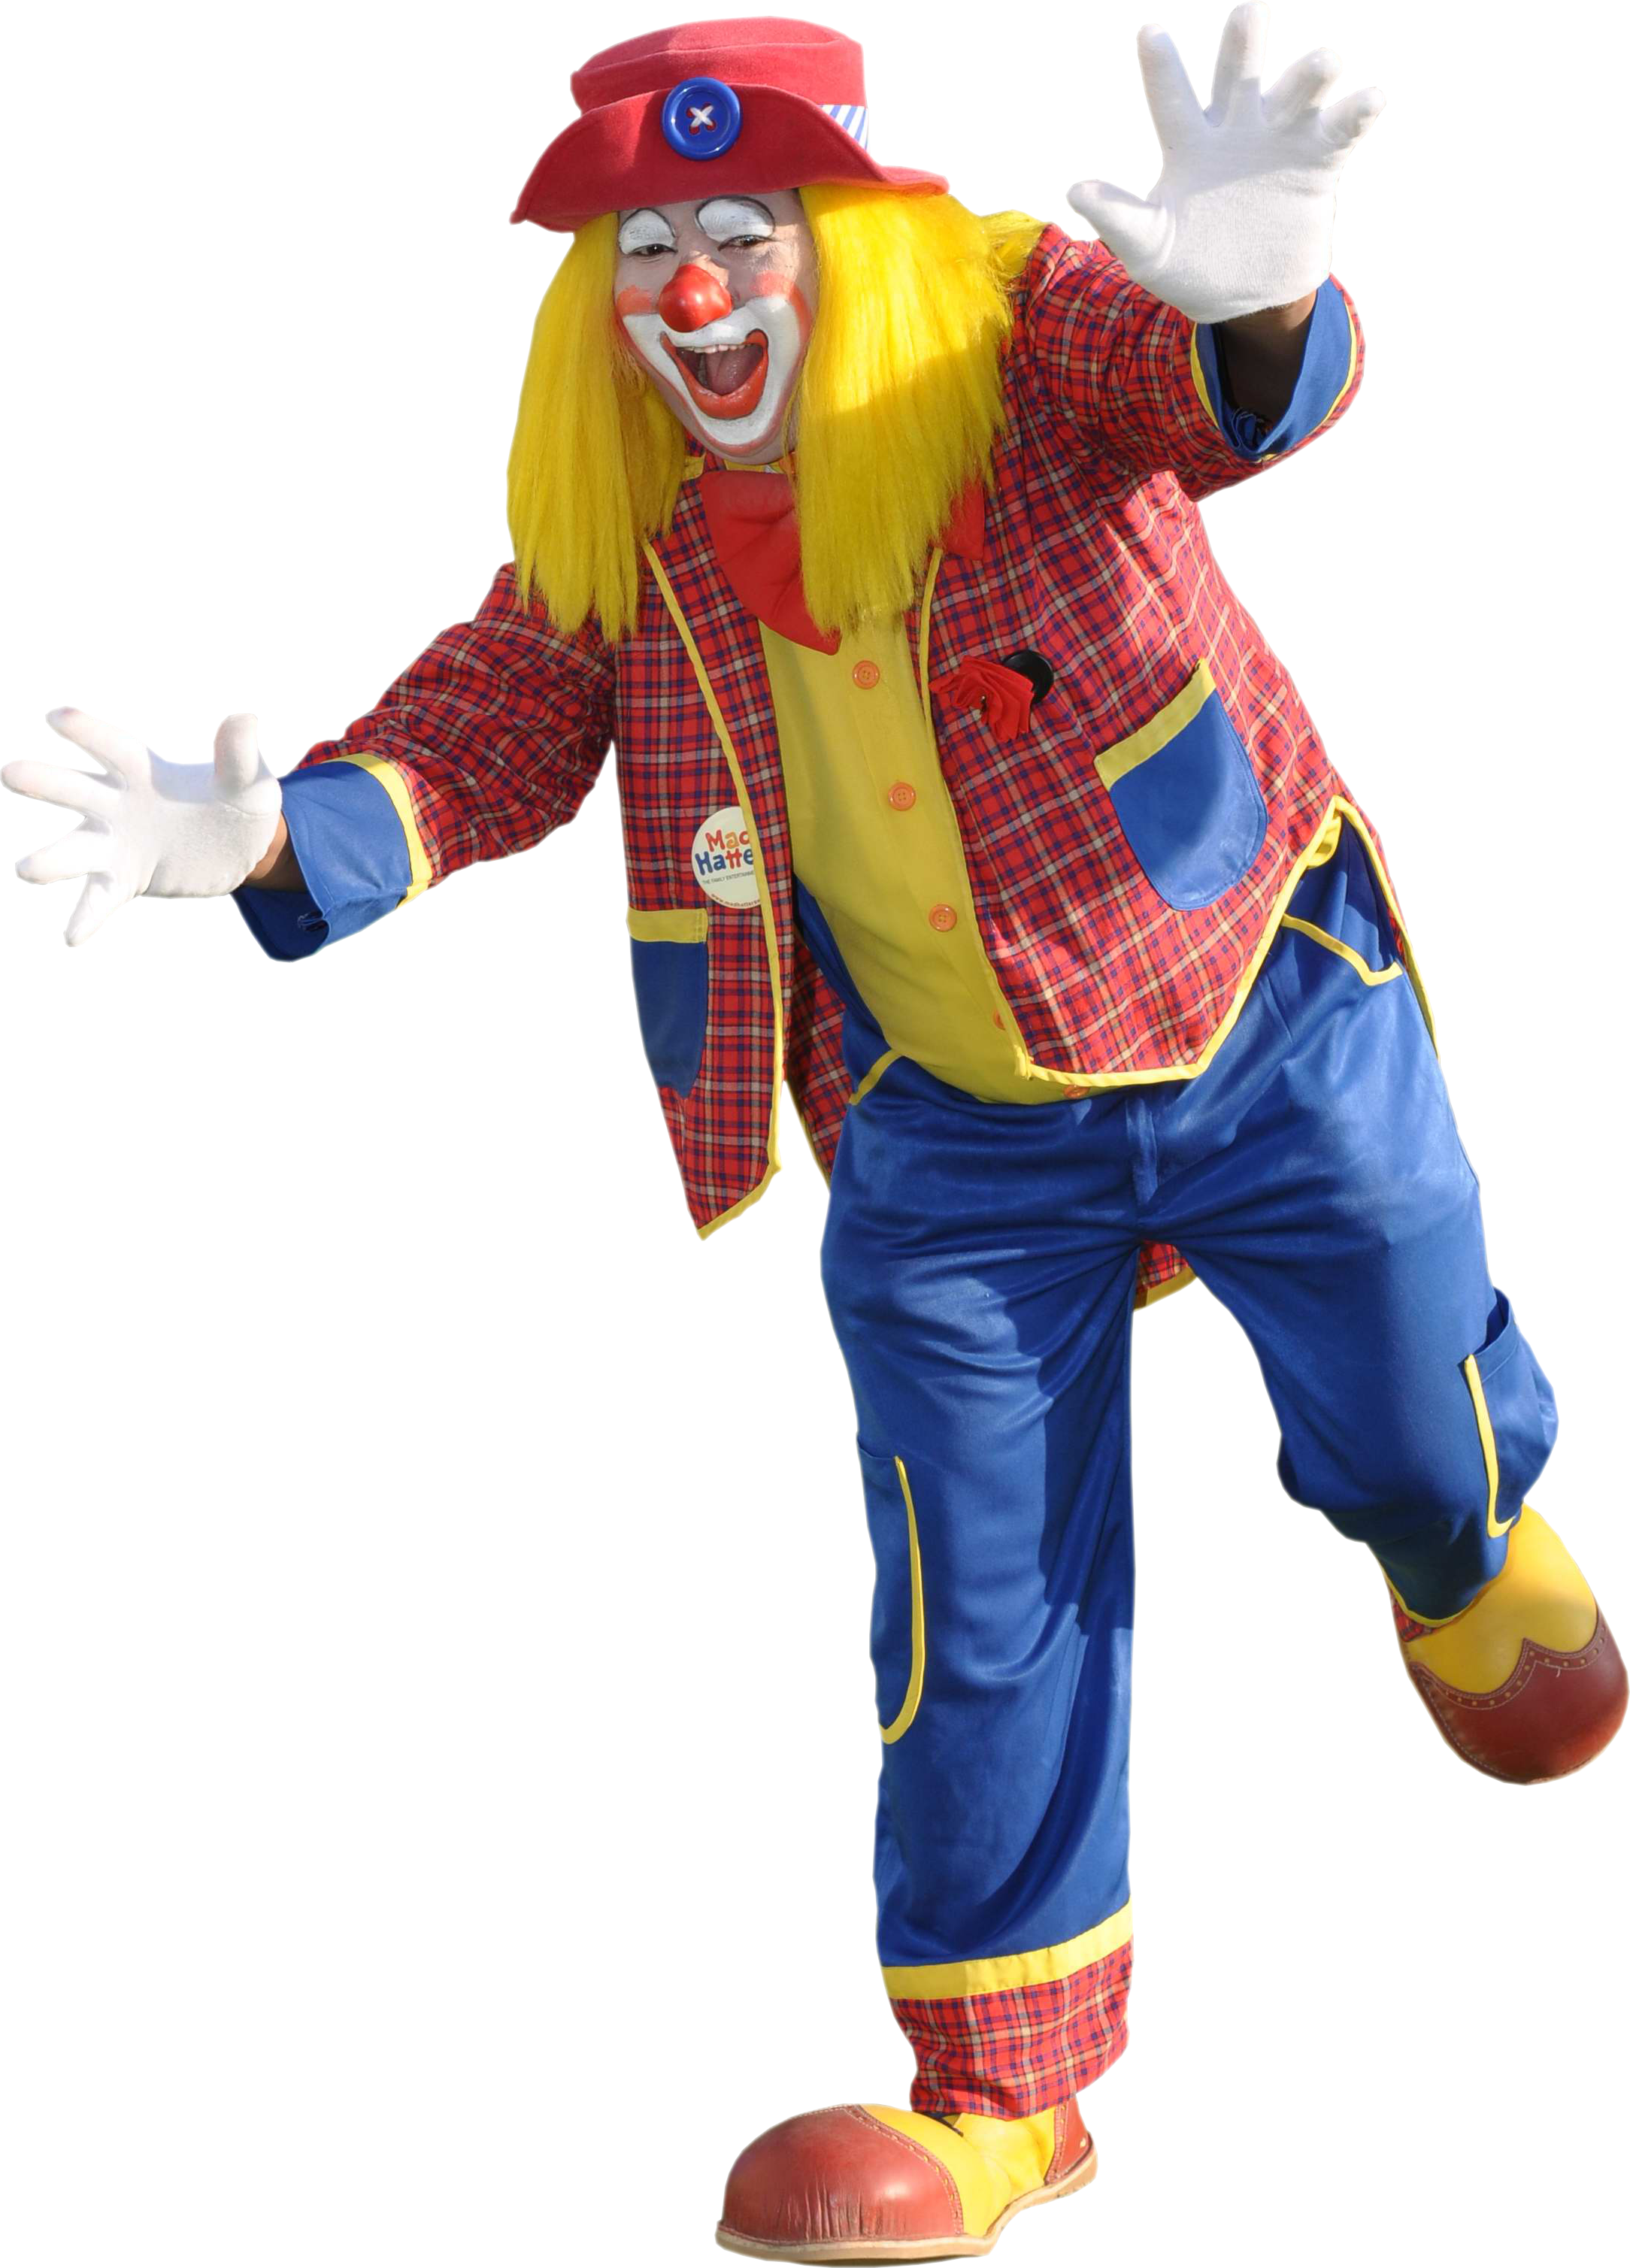 Martin - Joker Circus (2168x3017)